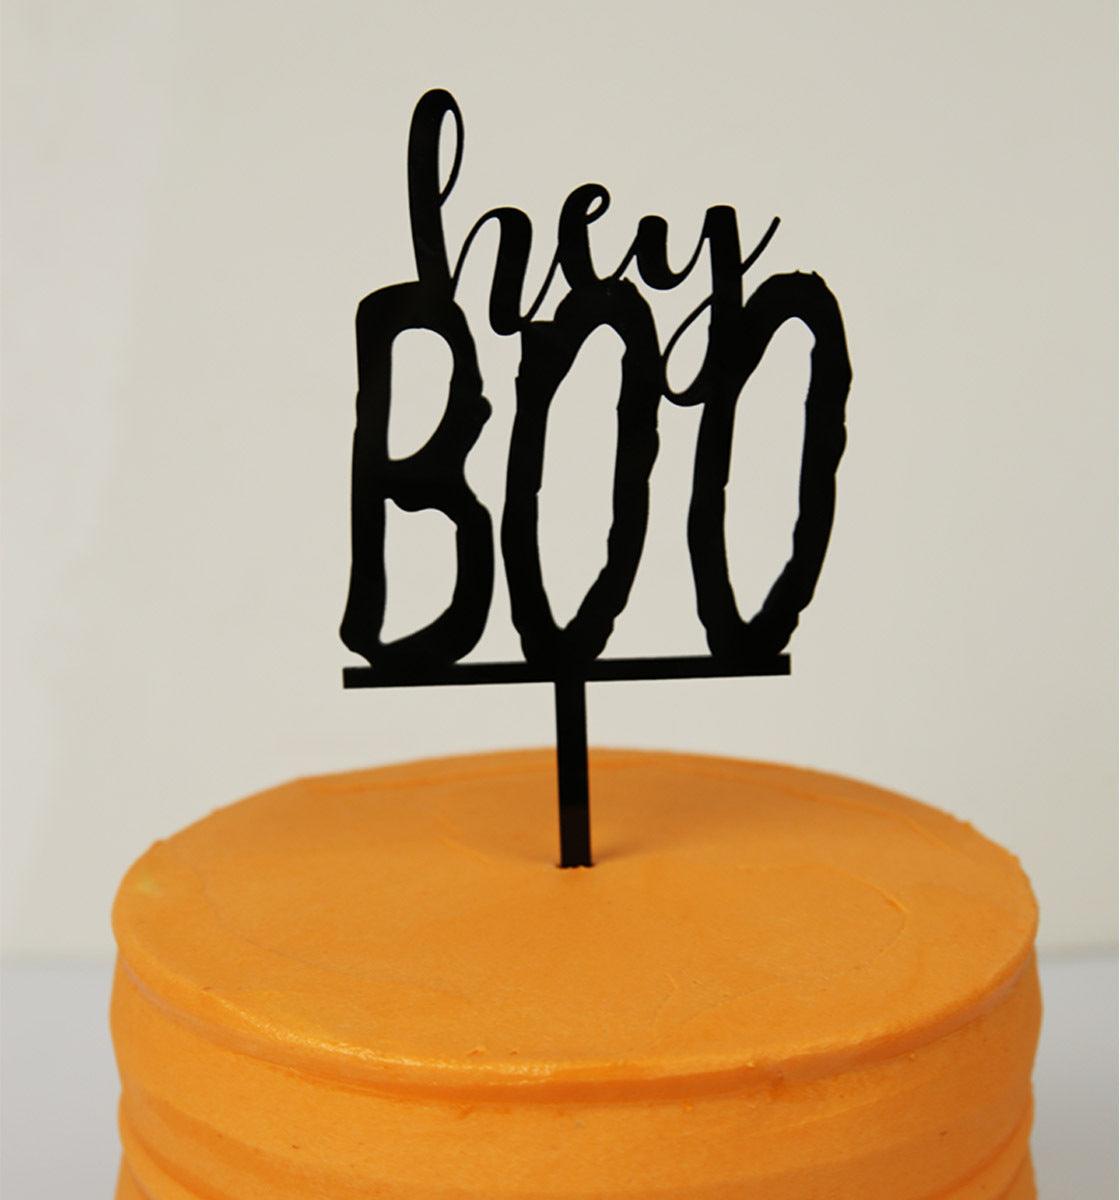 Hey Boo - cake topper - Inspired Baking 